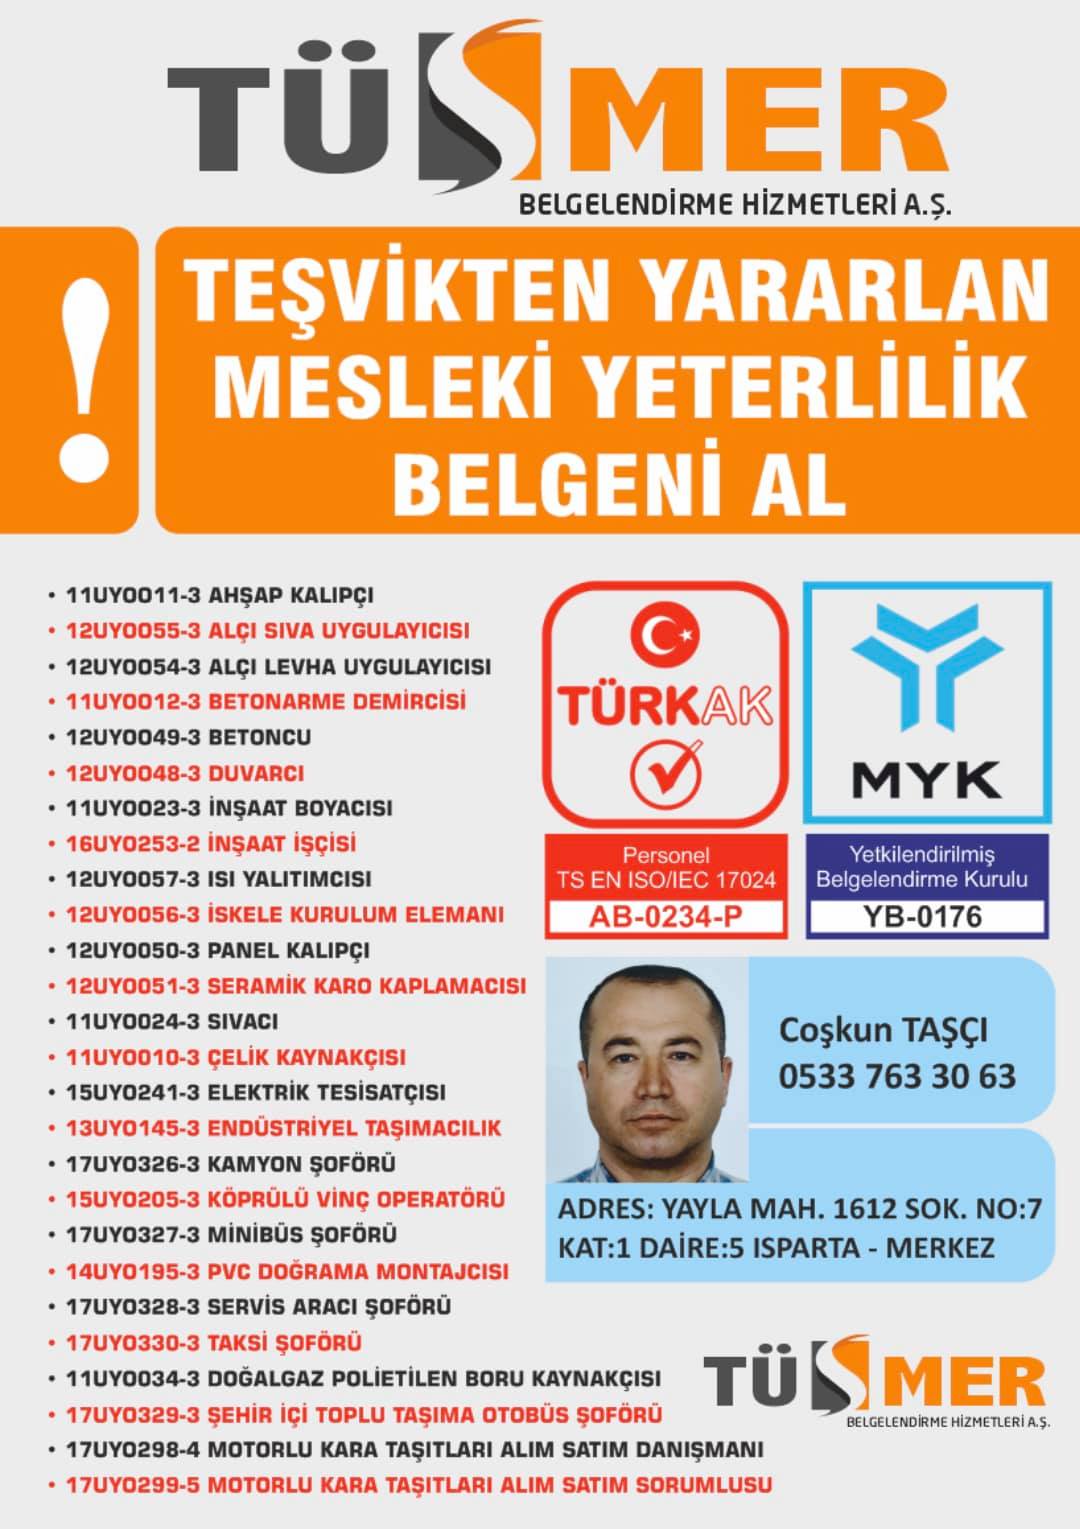 MYK MESLEKİ YETERLİLİK BELGESİ Mustafa KemalAtaşehir İstanbul